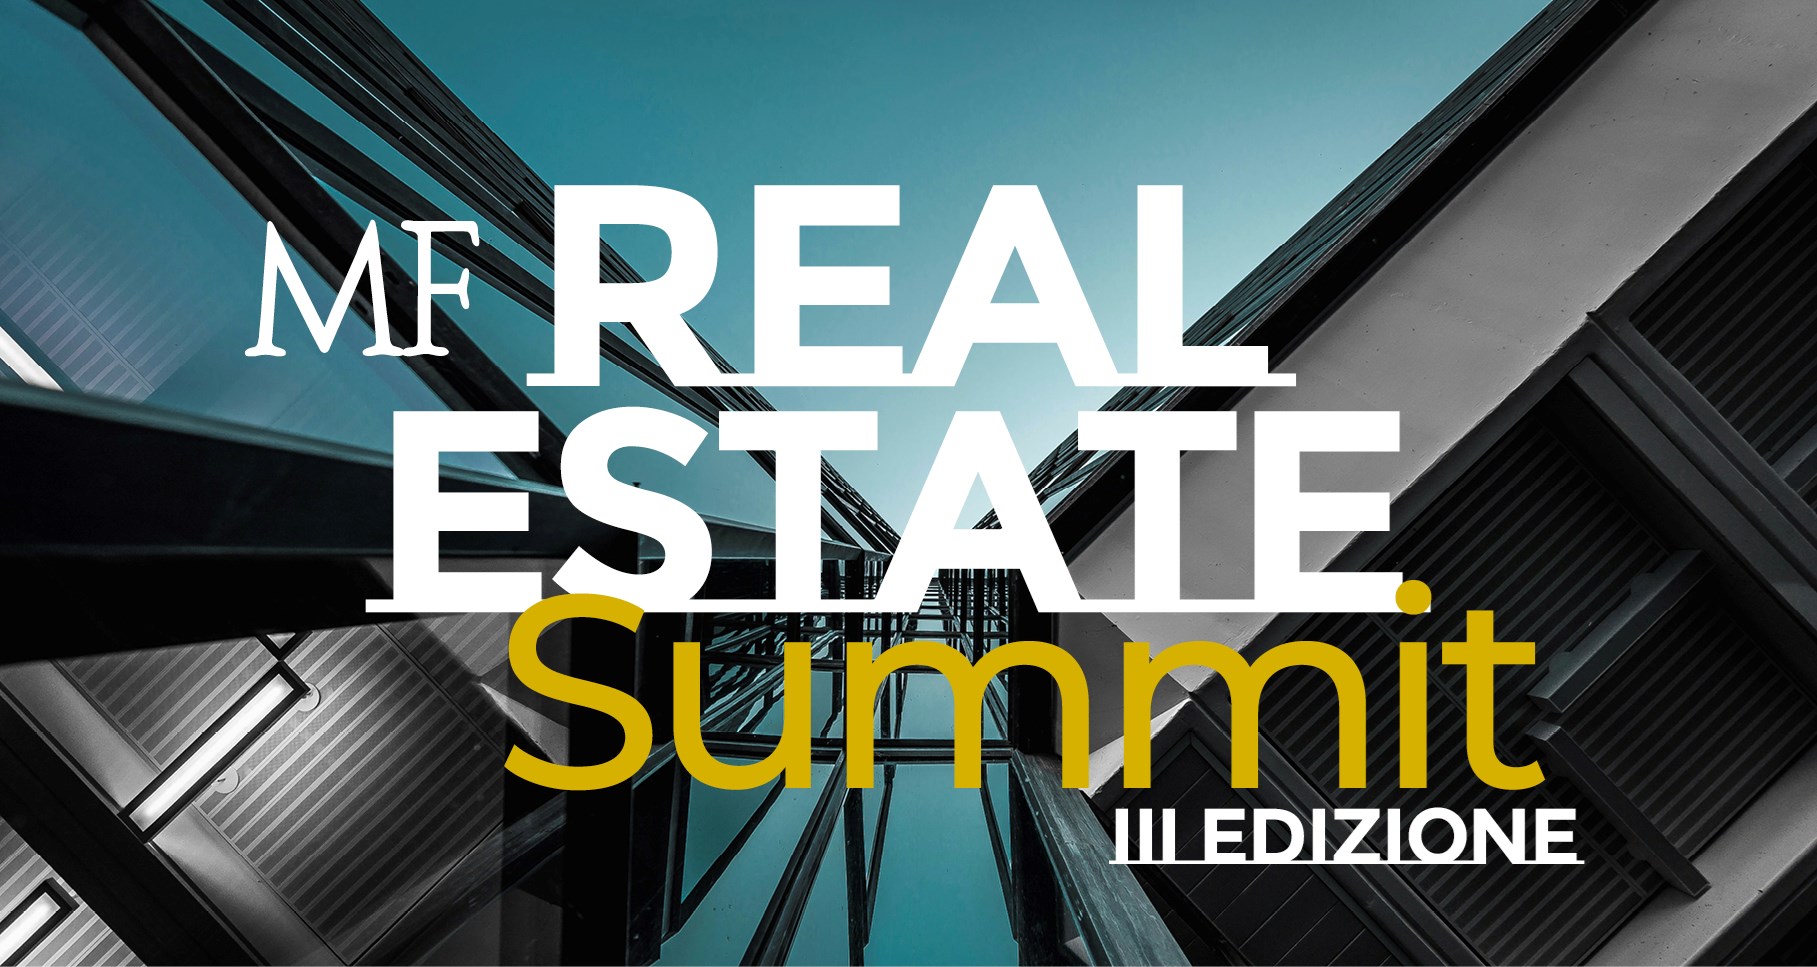 MF Real Estate Summit 2024